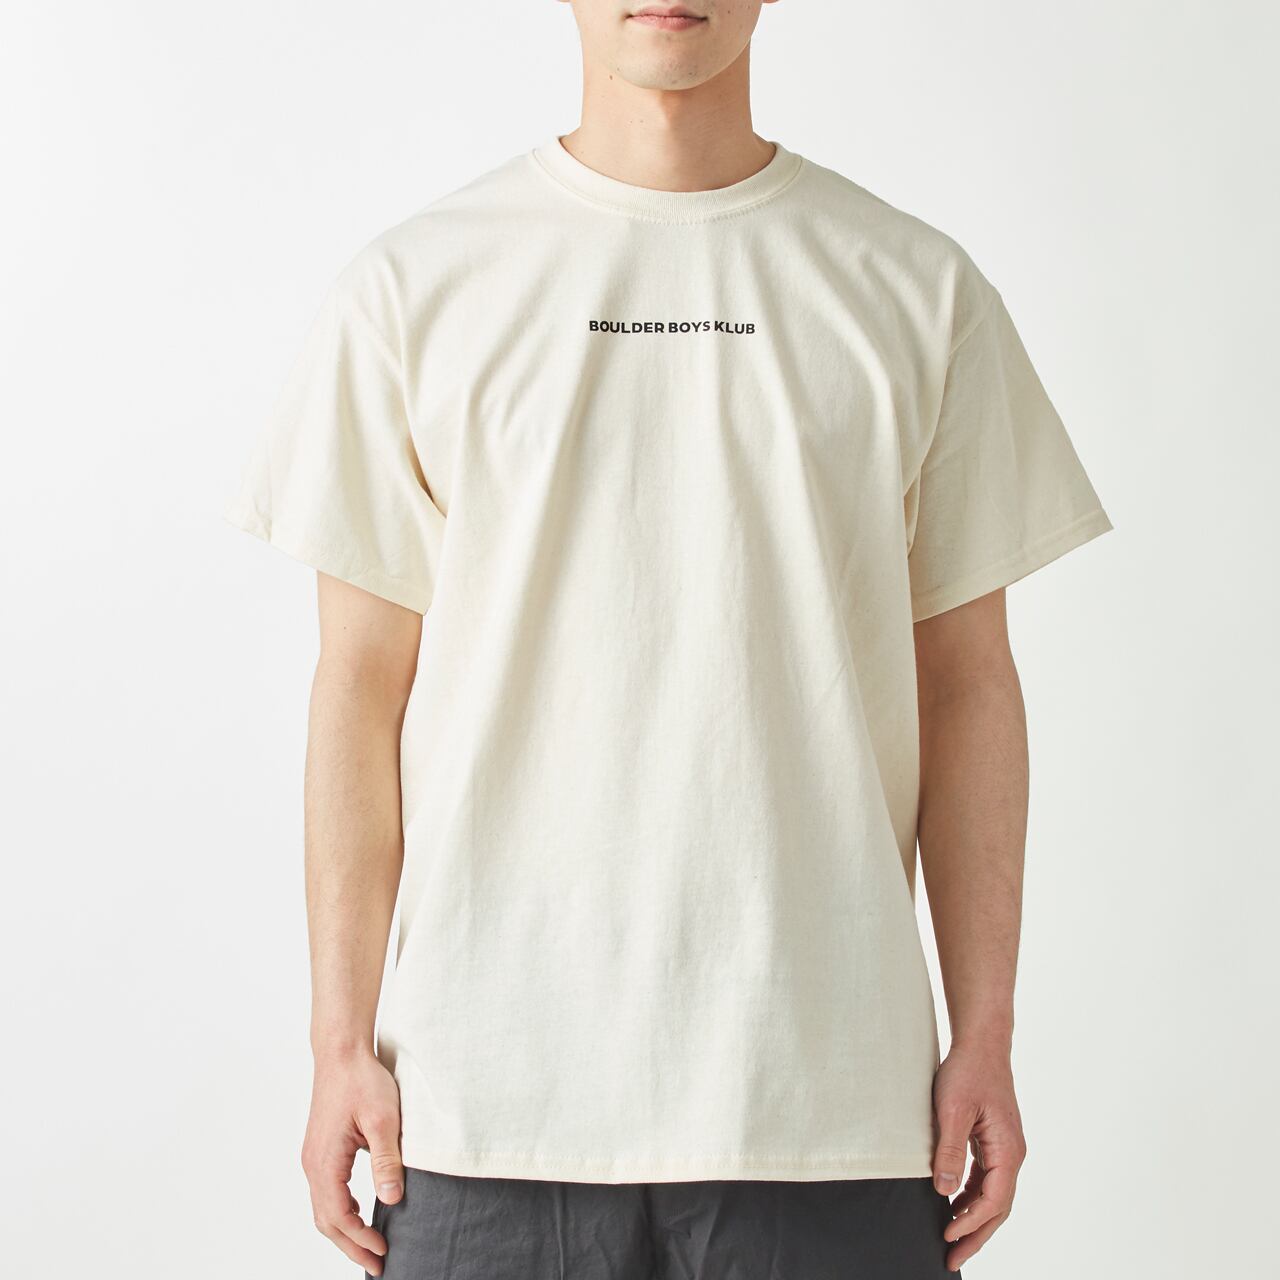 オープン記念Tシャツ | BOULDER BOYS KLUB クライミングジム